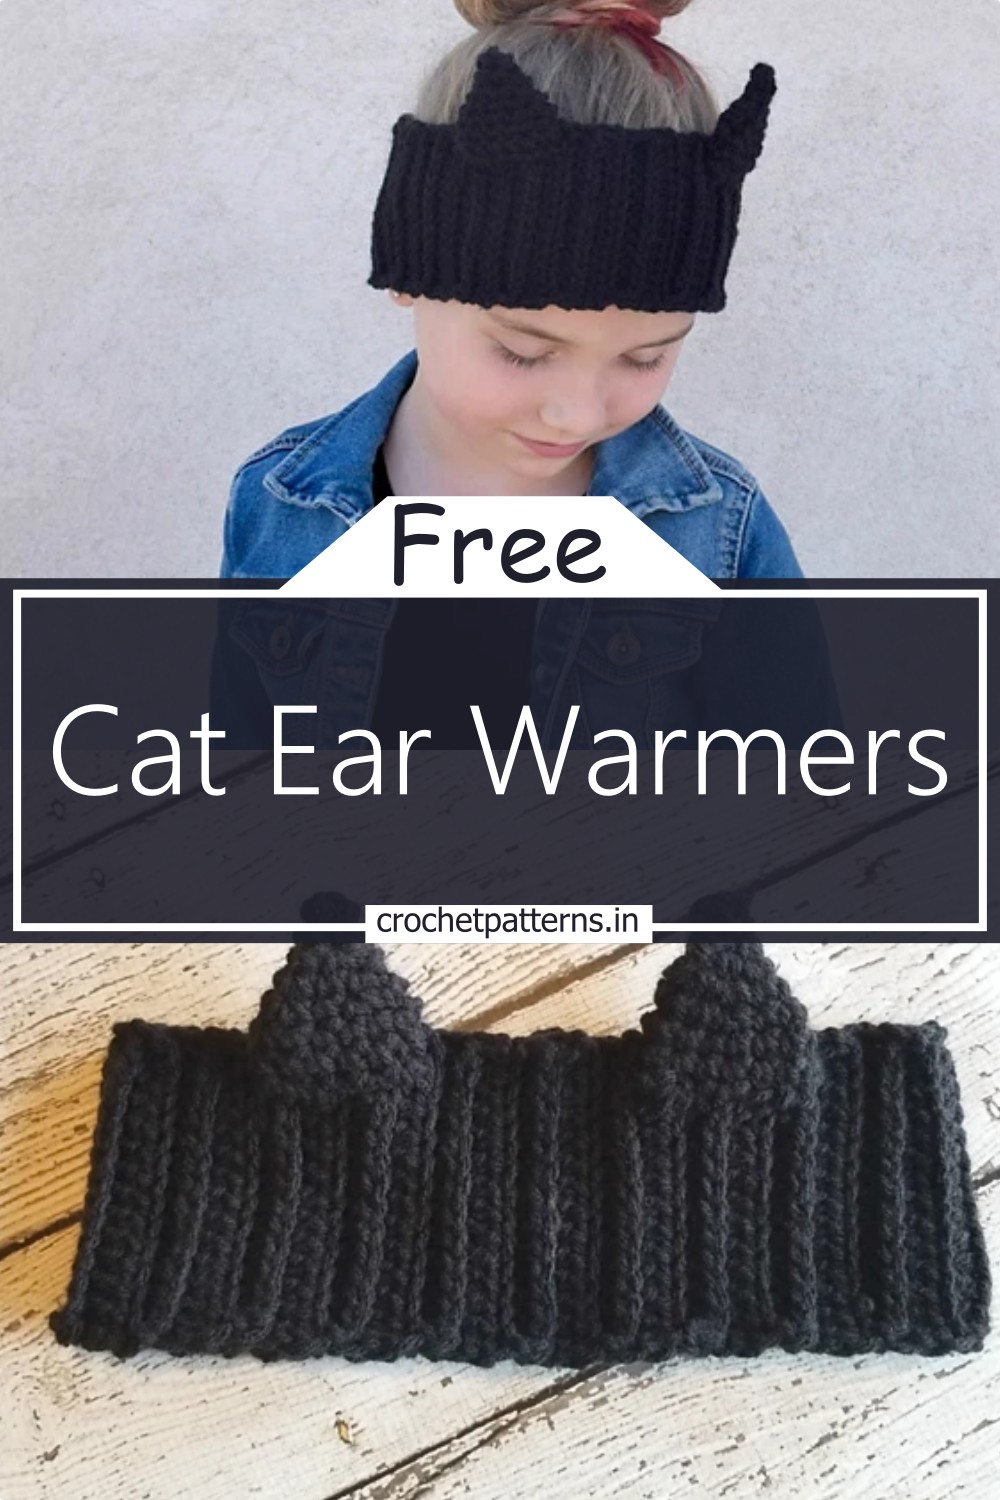 Cat Ear Warmers